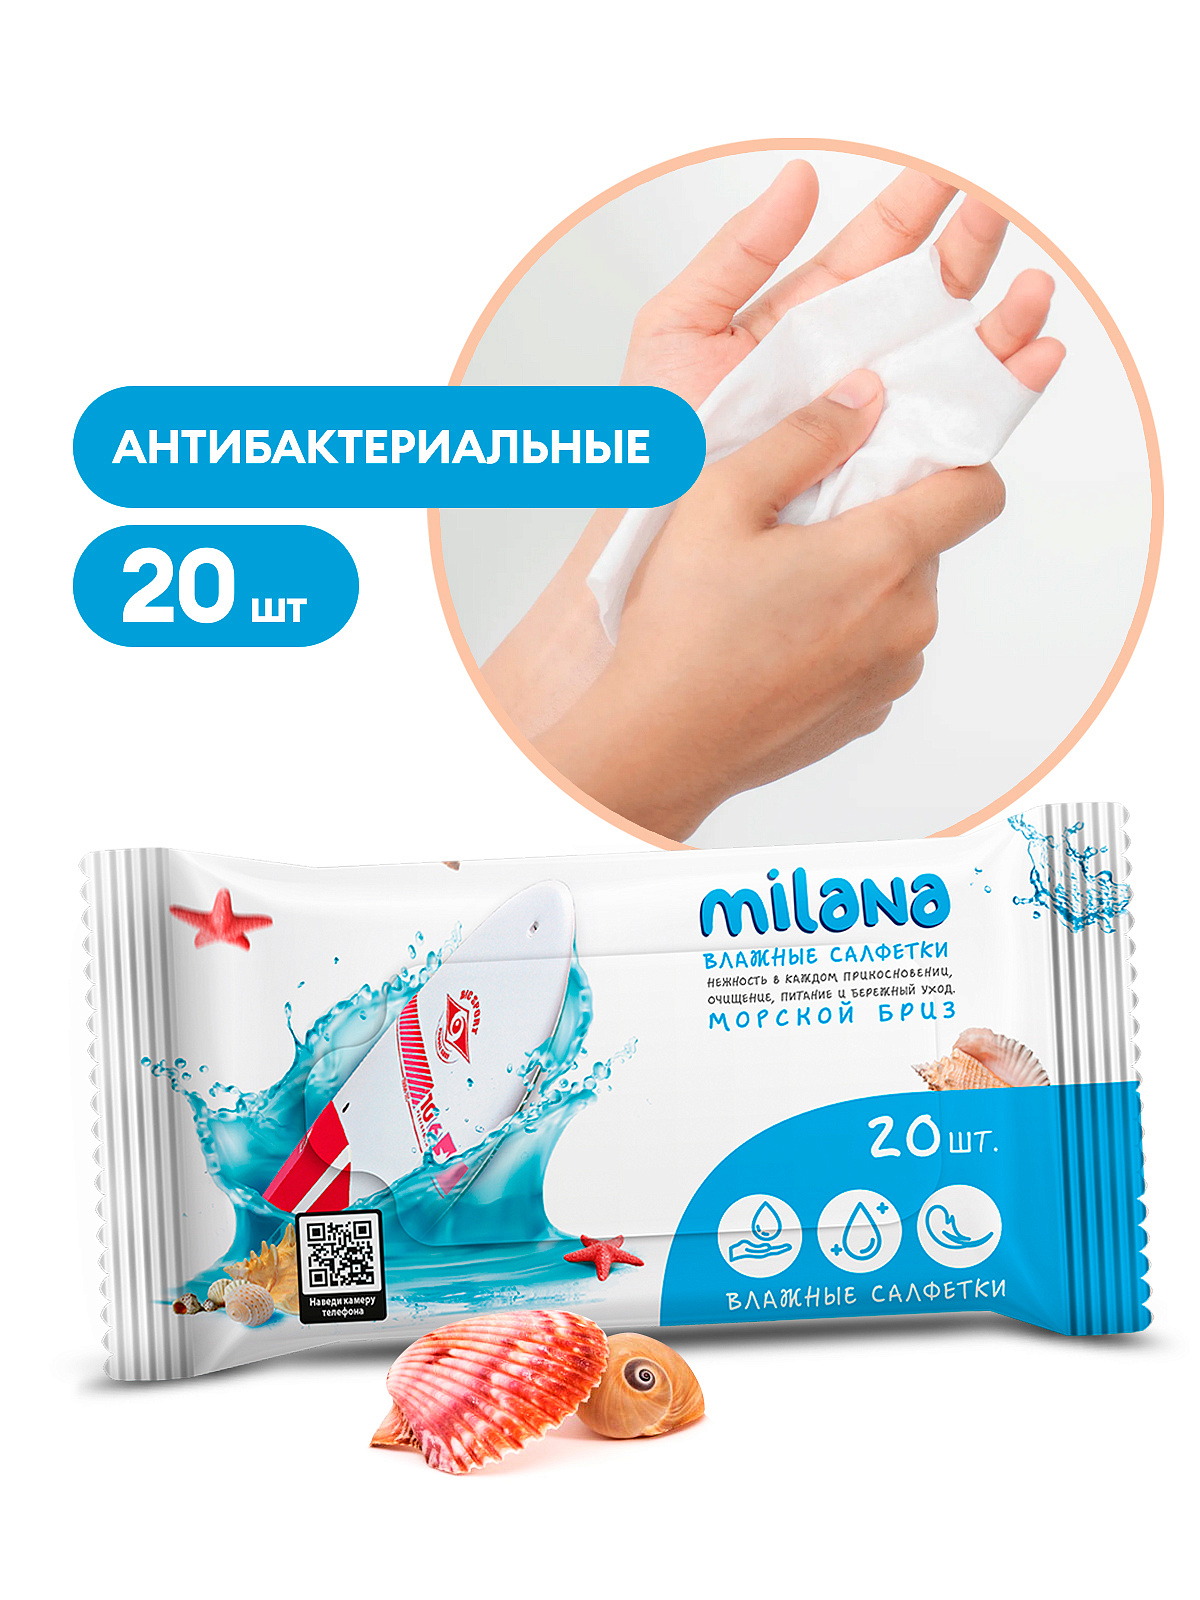 Влажные антибактериальные салфетки Milana Морской бриз (20 шт.)